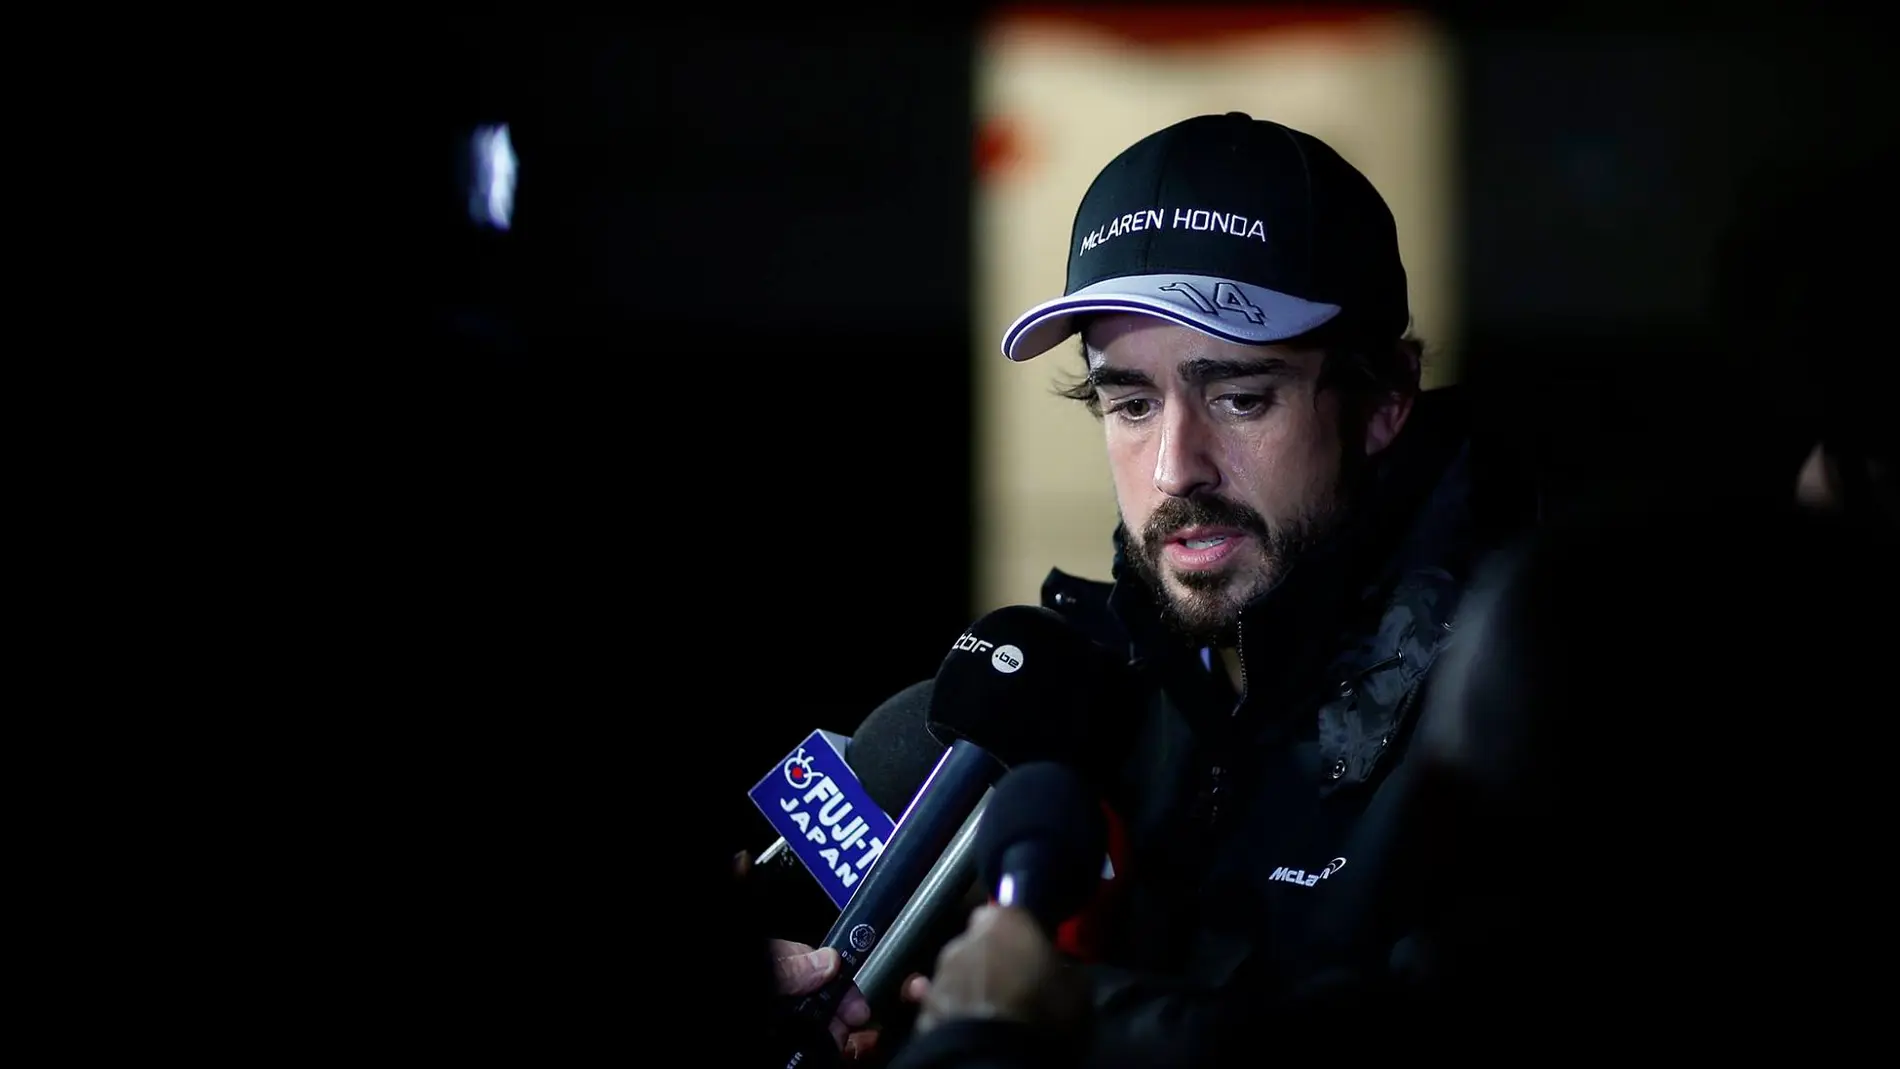 Alonso atiende a los medios en Montmeló